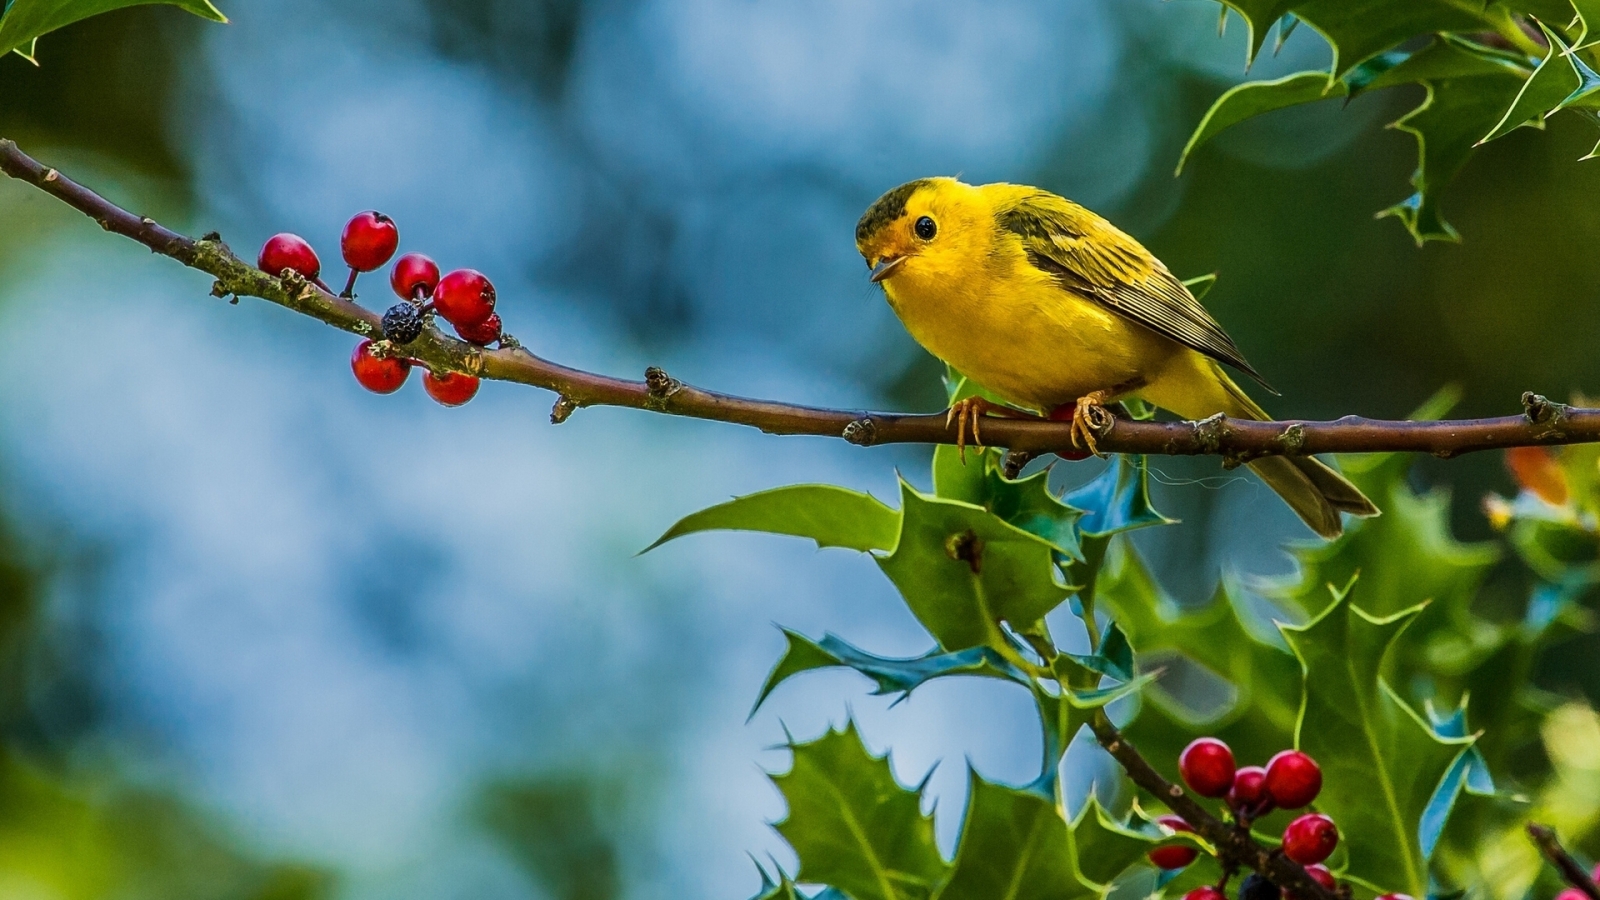 Cute Little Yellow Bird for 1600 x 900 HDTV resolution